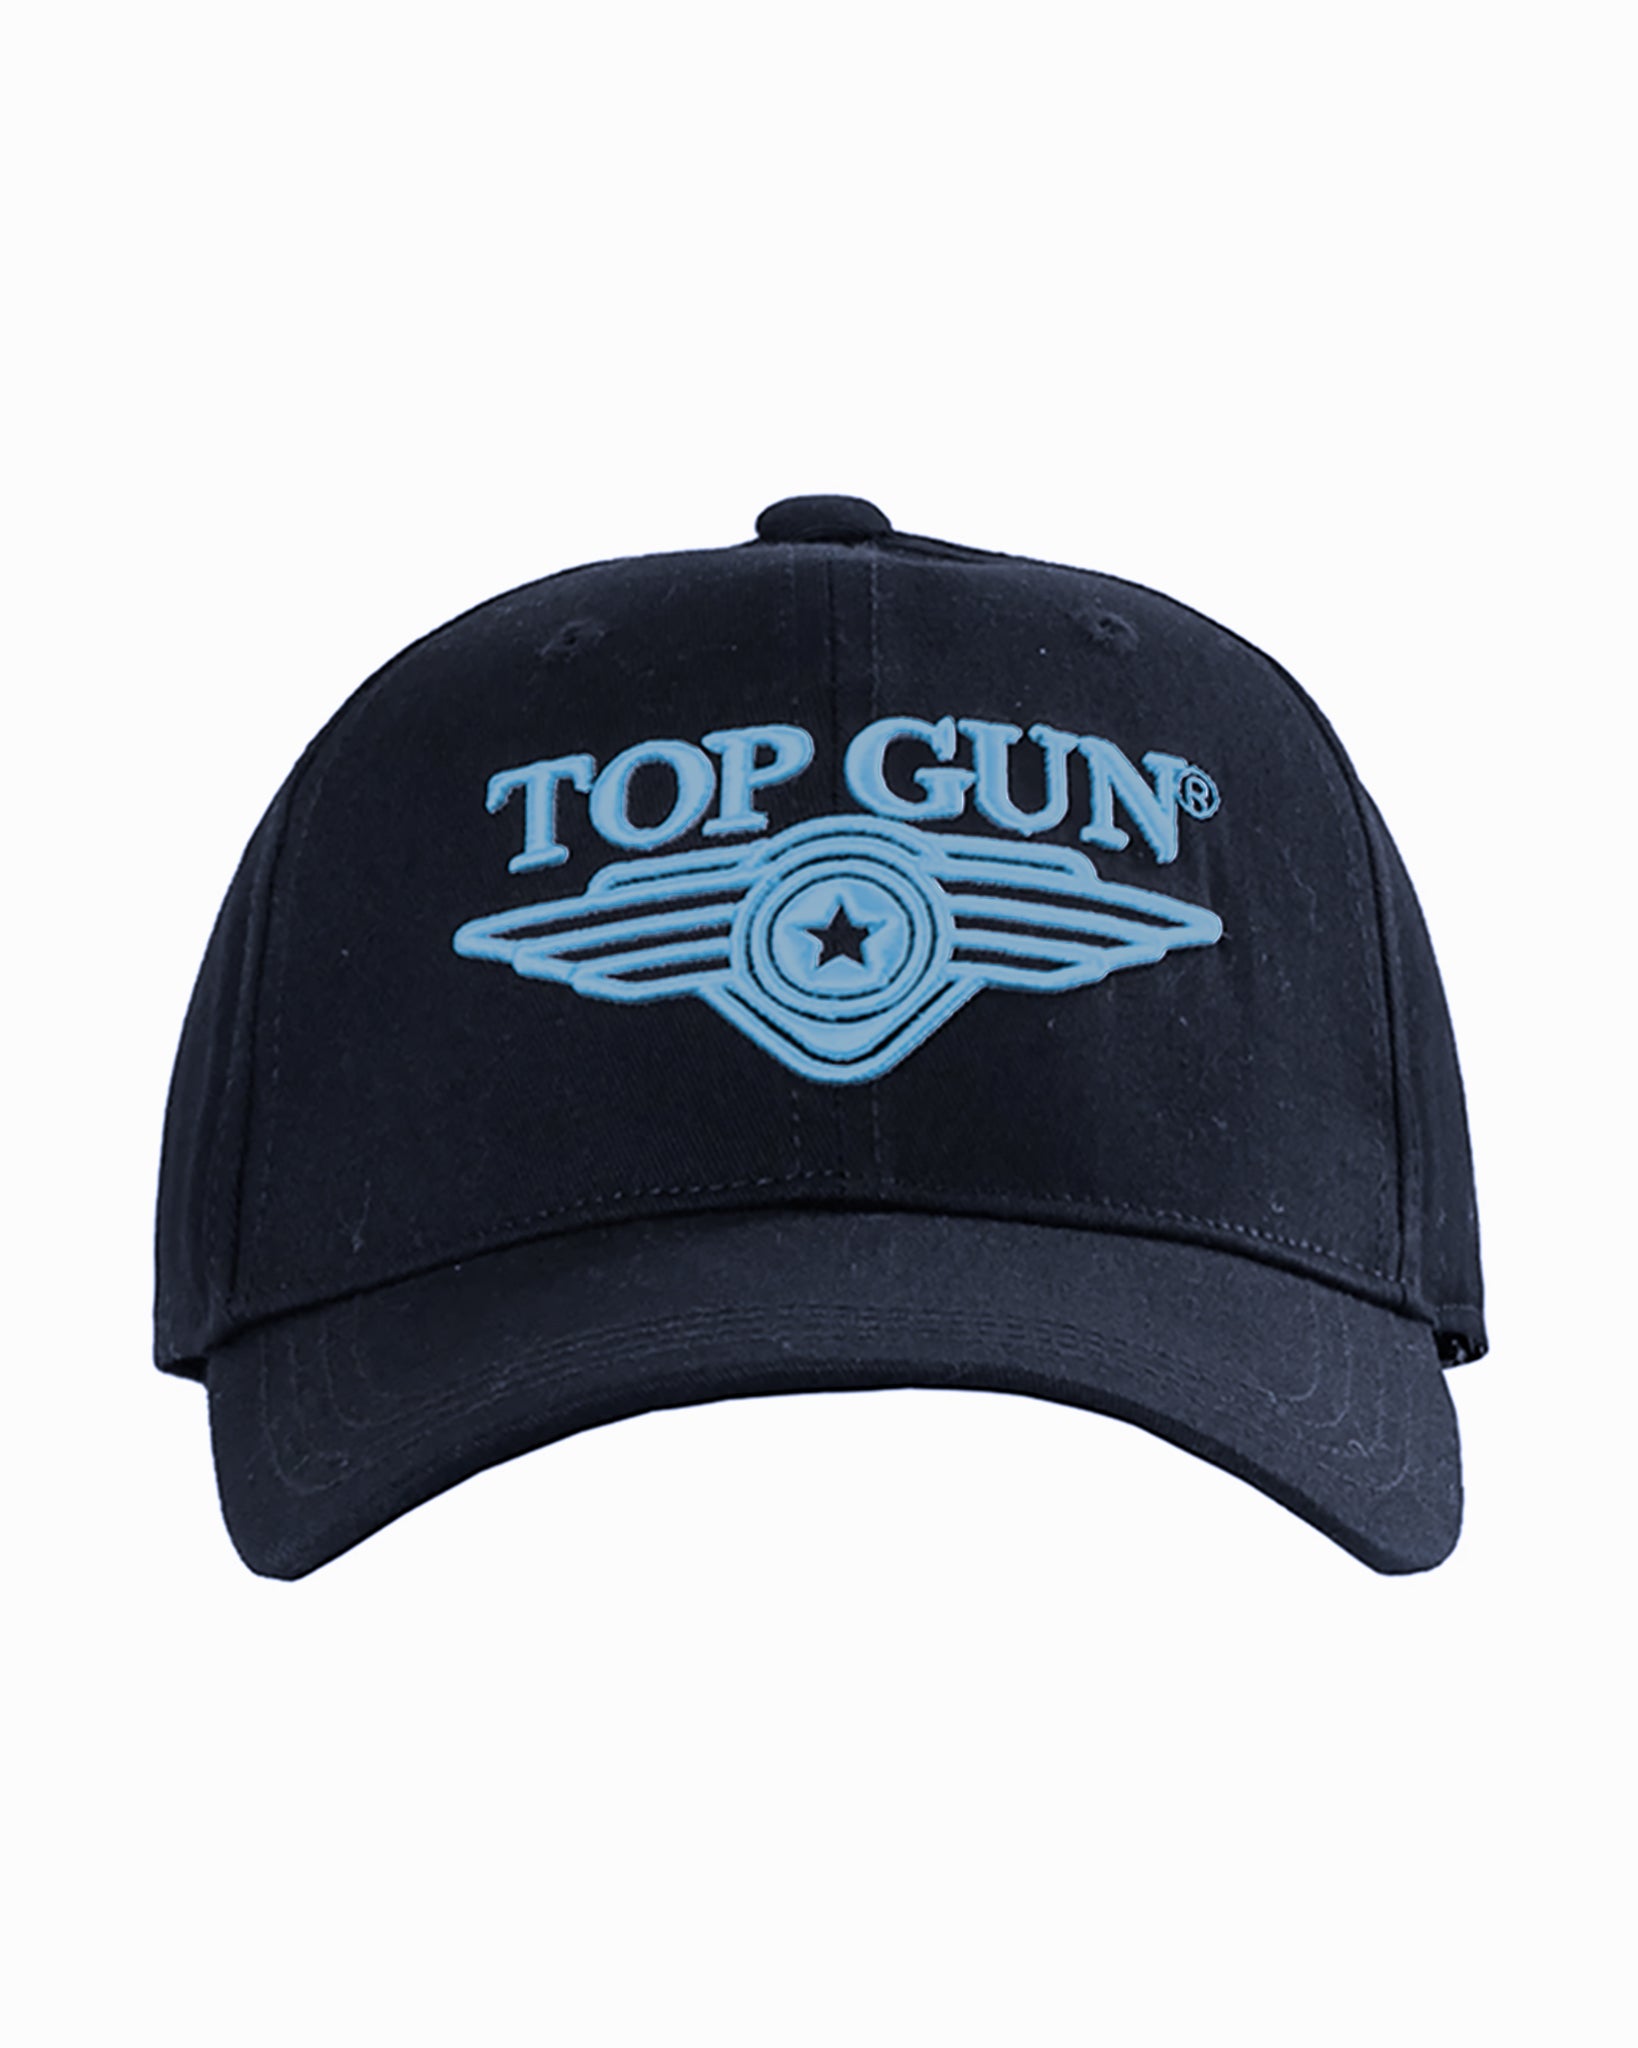 GUN® Top LOGO TOP WINGS Gun Store – 3D CAP